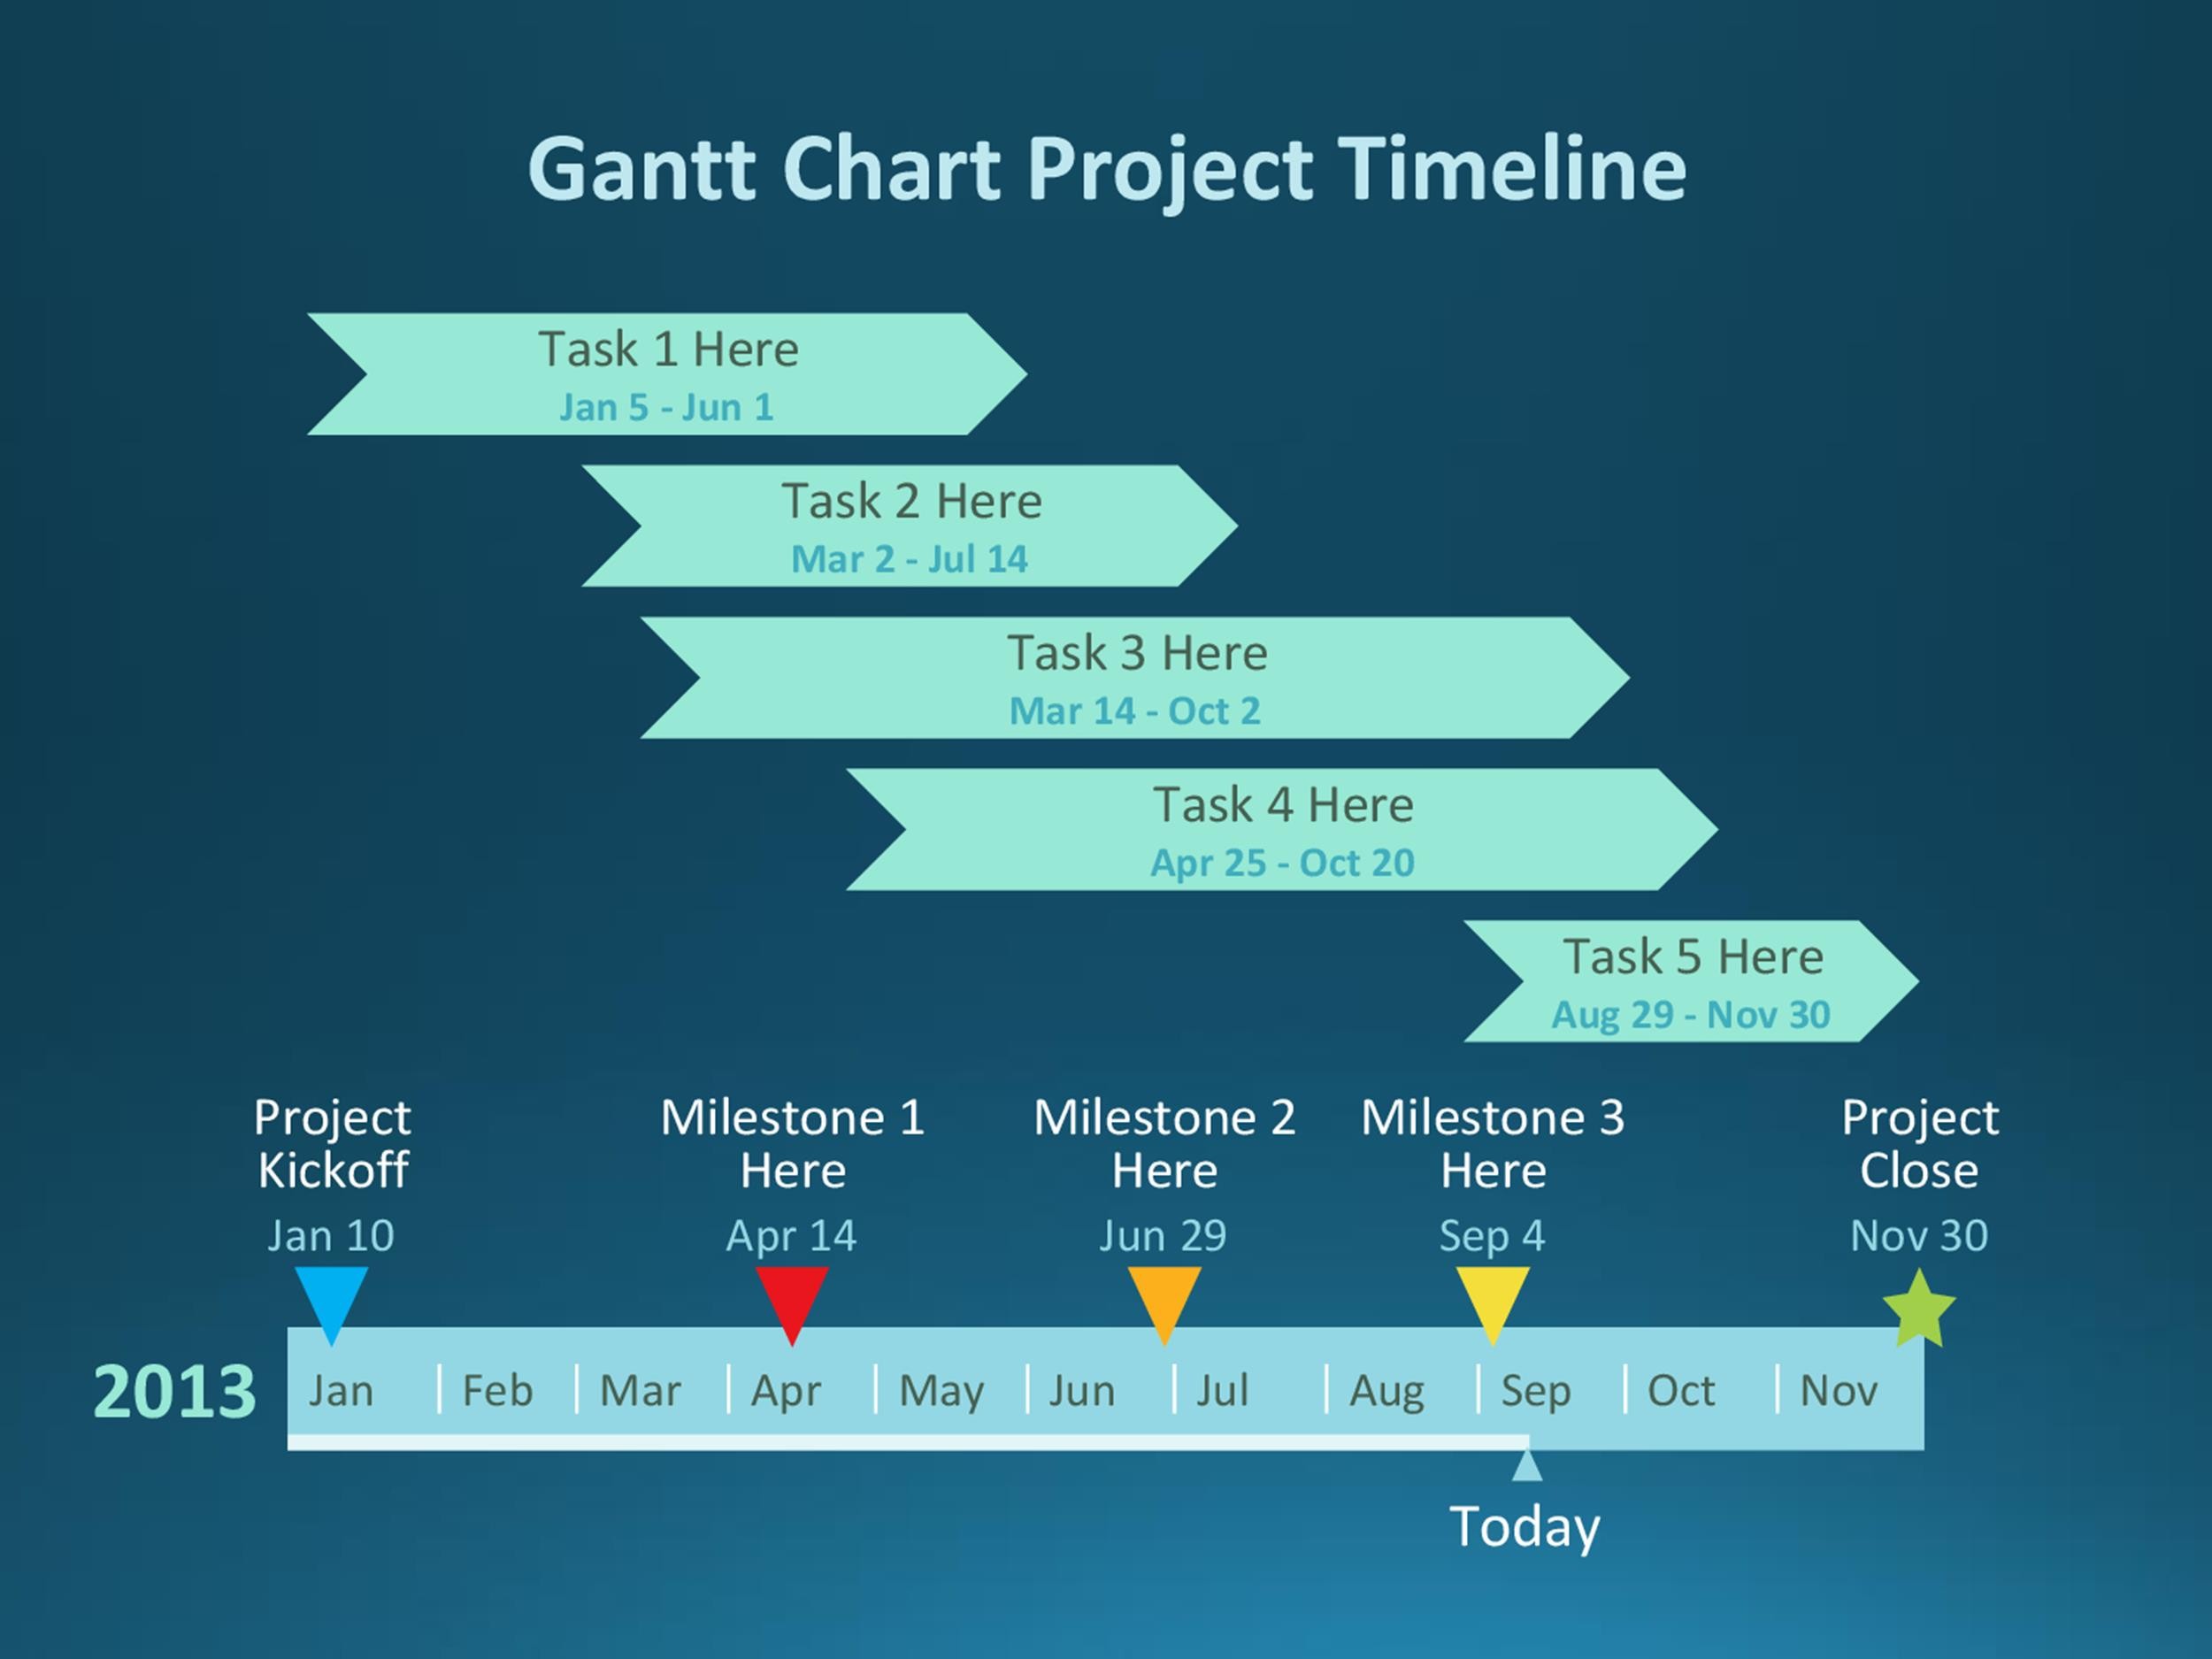 Powerpoint Gantt Chart Template